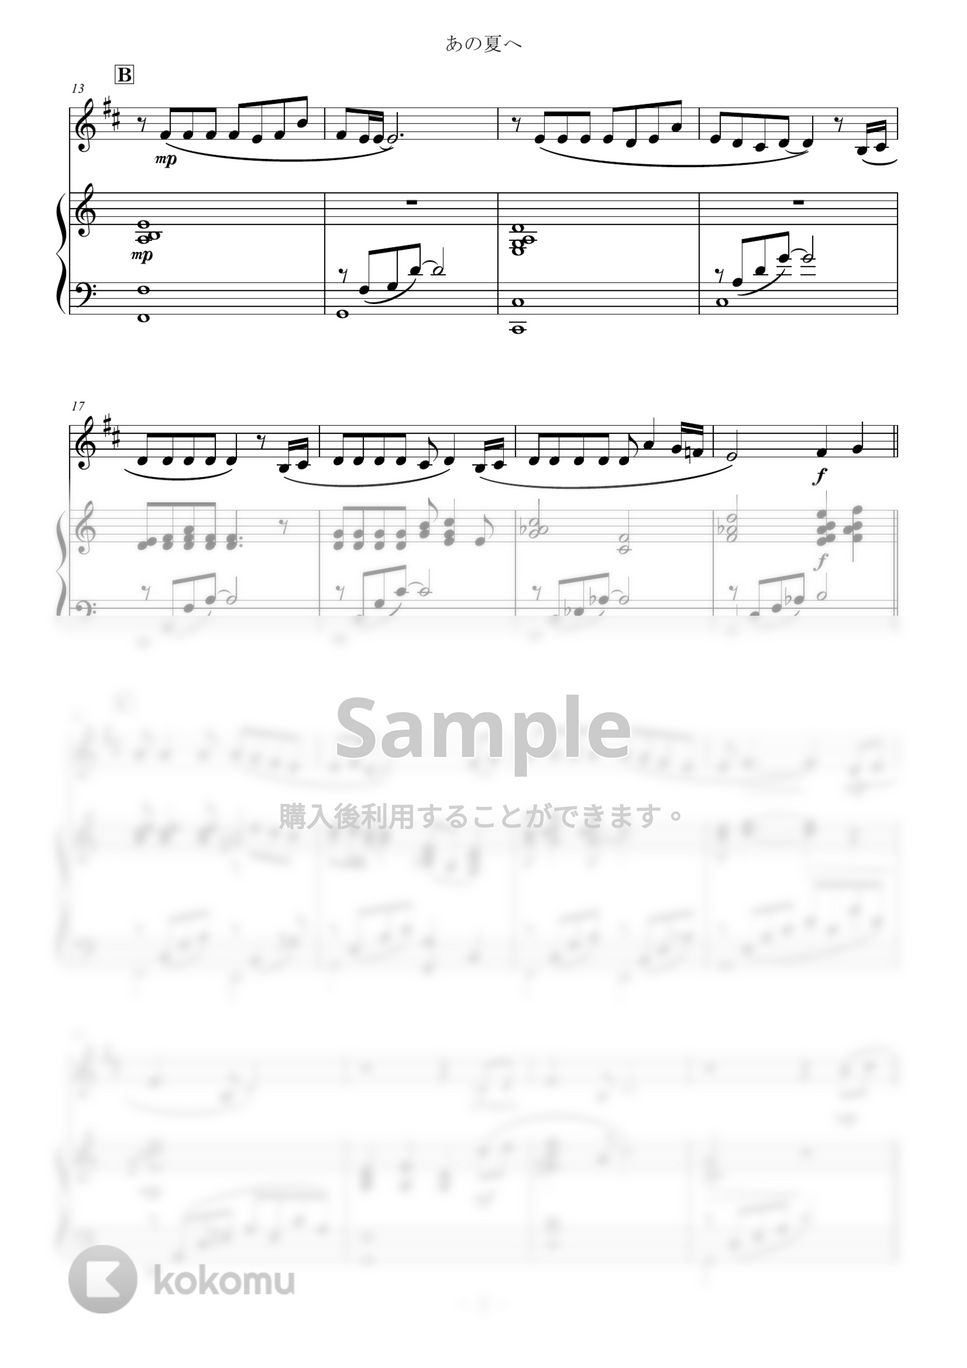 久石譲 - あの夏へ for Trumpet and Piano / from 千と千尋の神隠し One Summer's Day (スタジオジブリ/千と千尋の神隠し) by Zoe